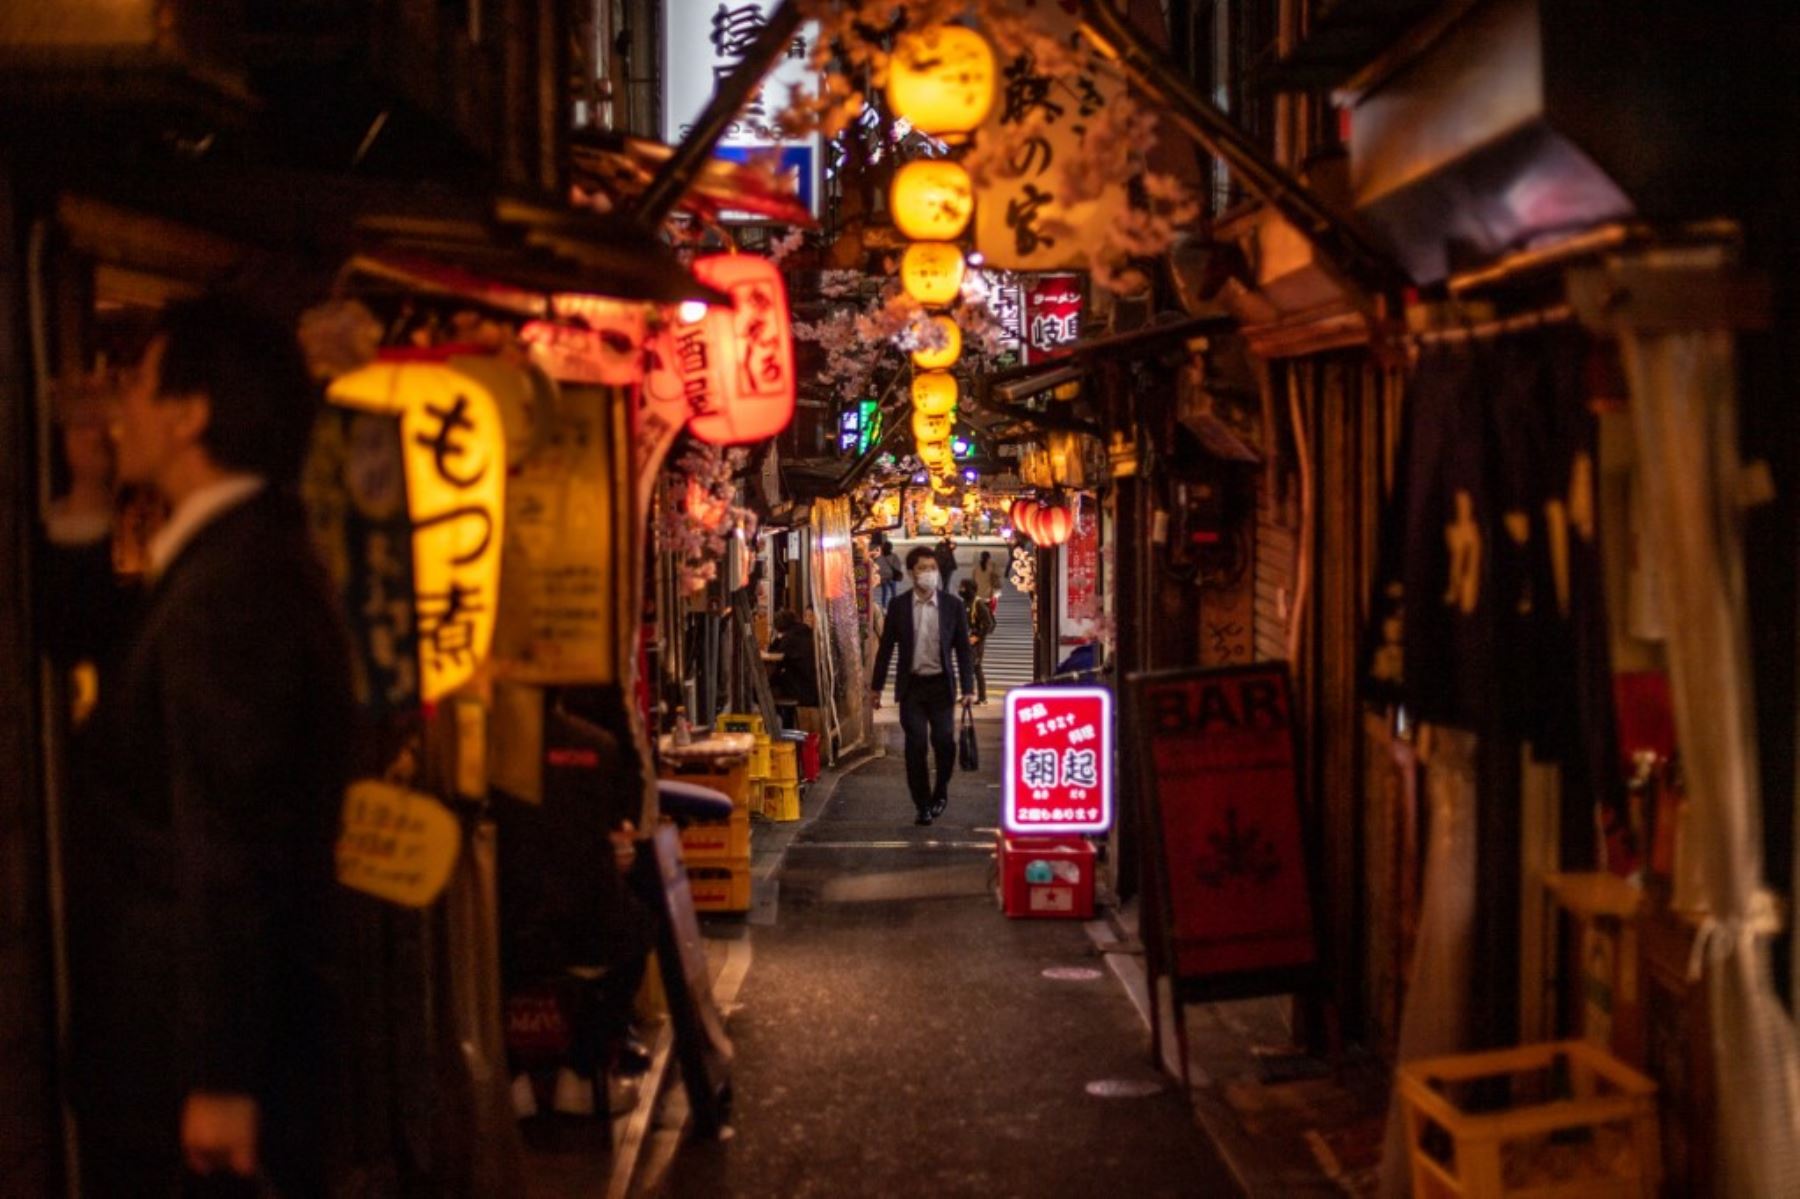 Una vista general muestra restaurantes a lo largo del callejón Omoide Yokocho en el distrito de Shinjuku en Tokio, cuando el gobierno de Japón aprobó medidas más estrictas contra el coronavirus para la capital y otras áreas. Foto: AFP